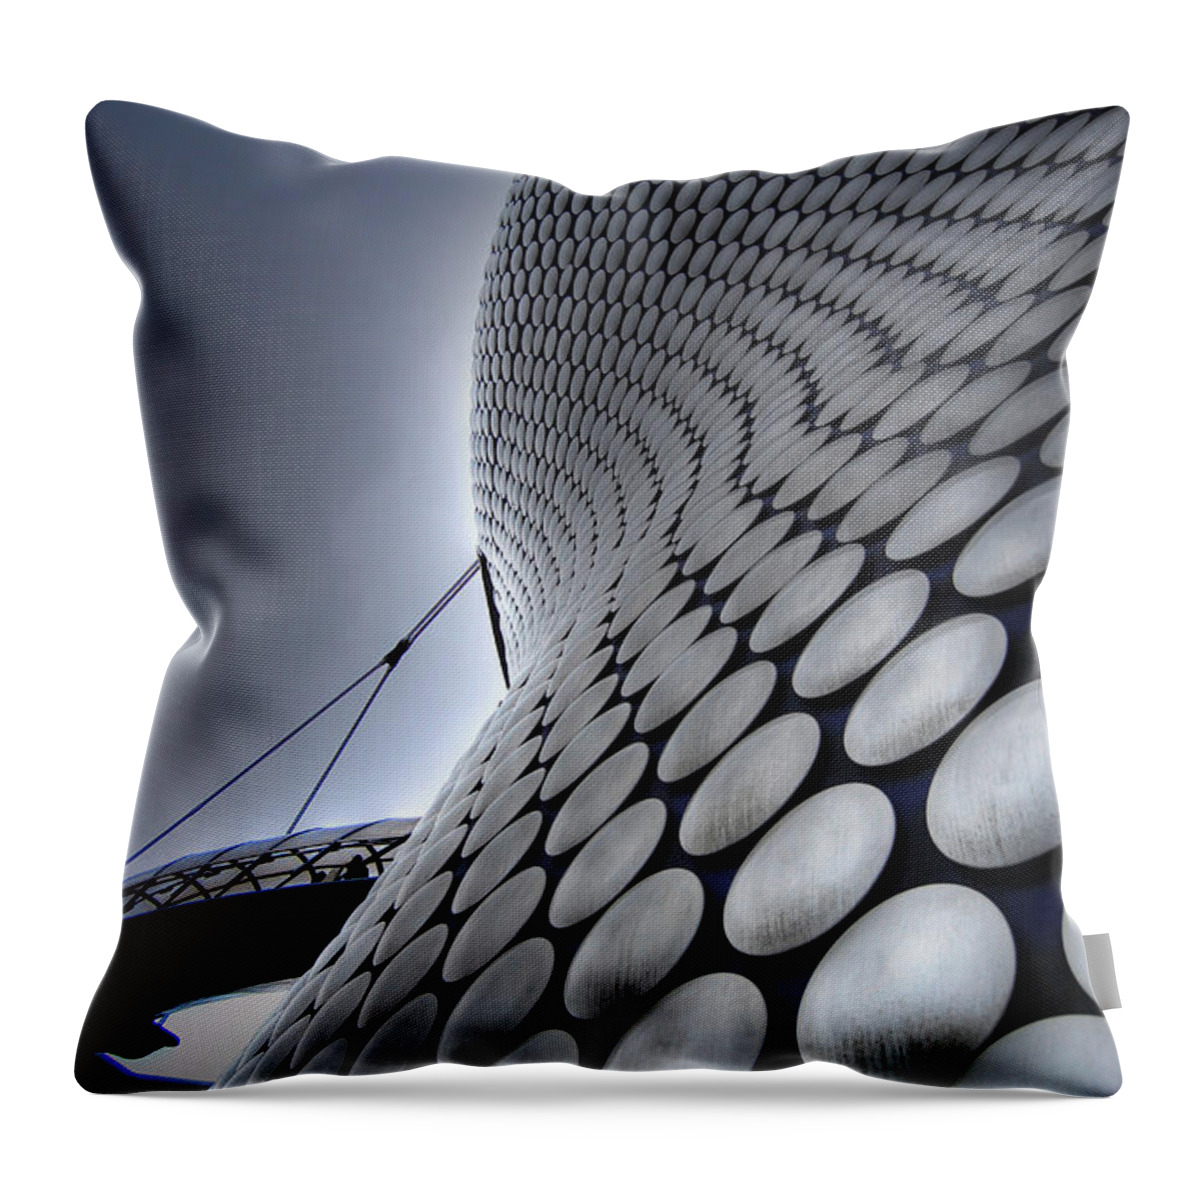 Art Throw Pillow featuring the photograph BullRing - Selfridges by Yhun Suarez